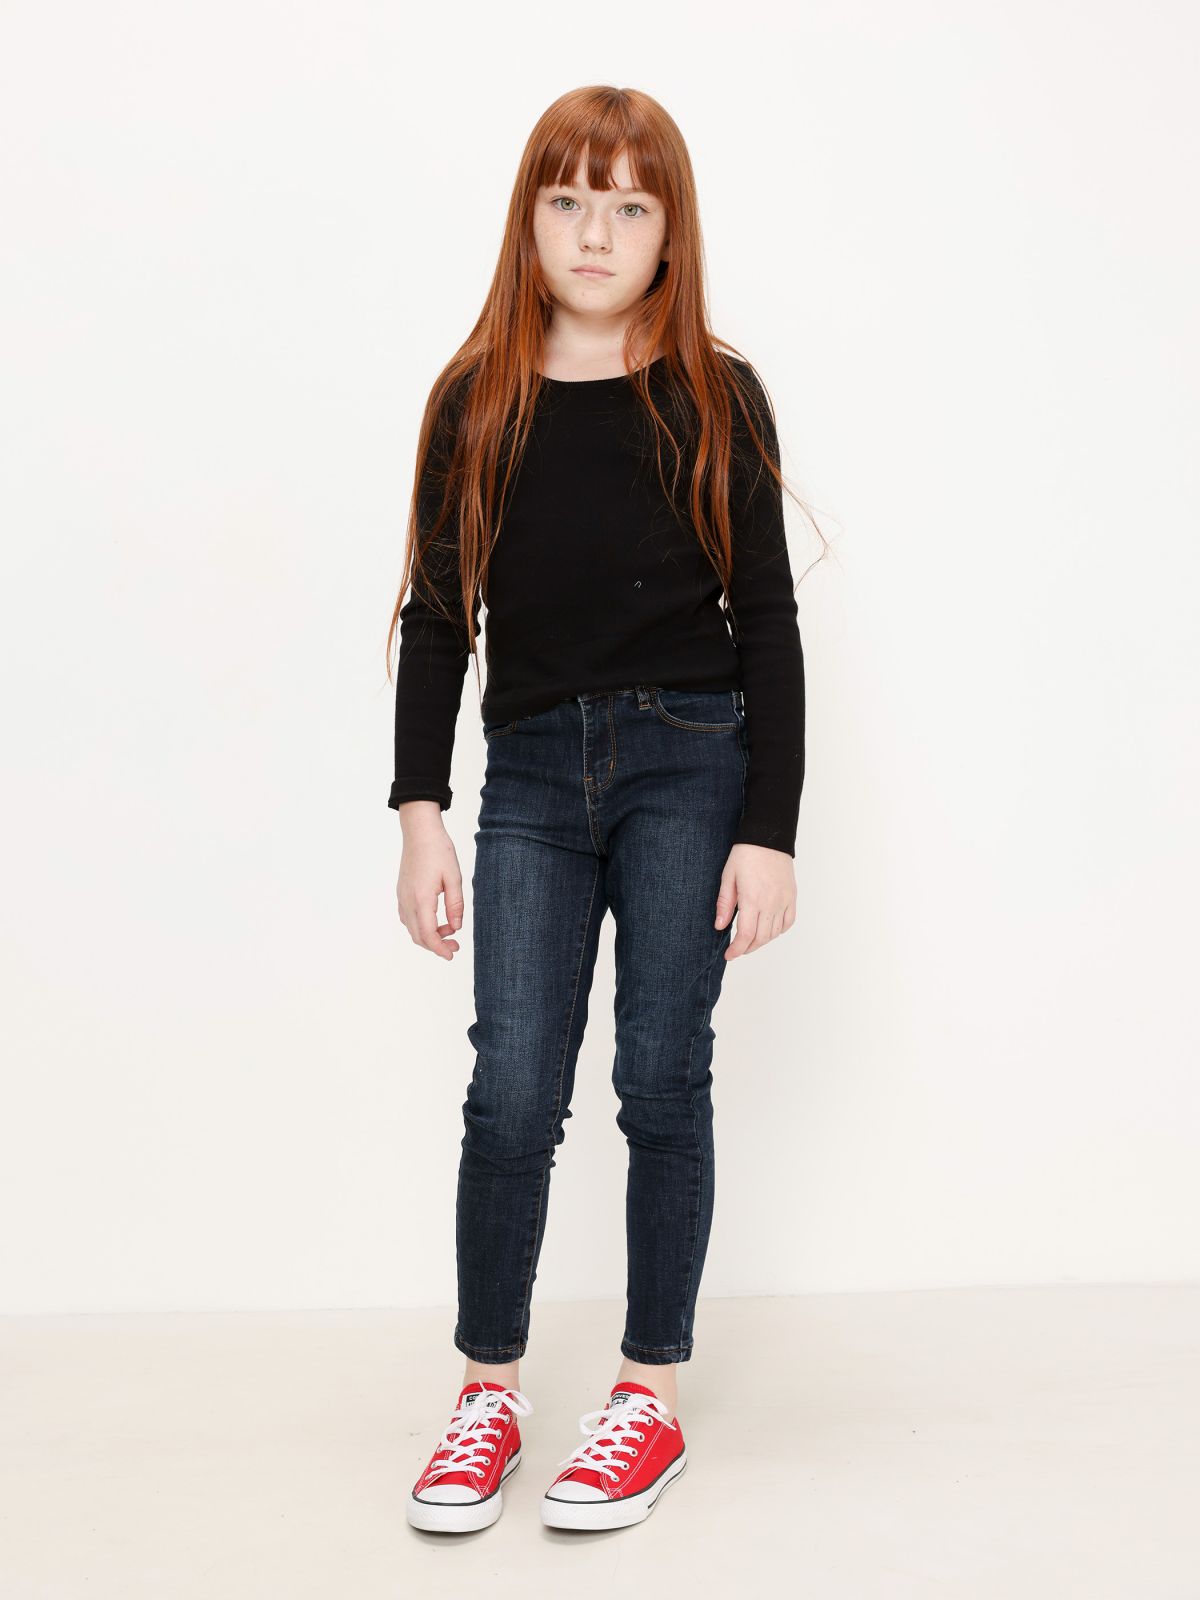  ג'ינס ארוך בשטיפה כהה / בנות של AMERICAN EAGLE